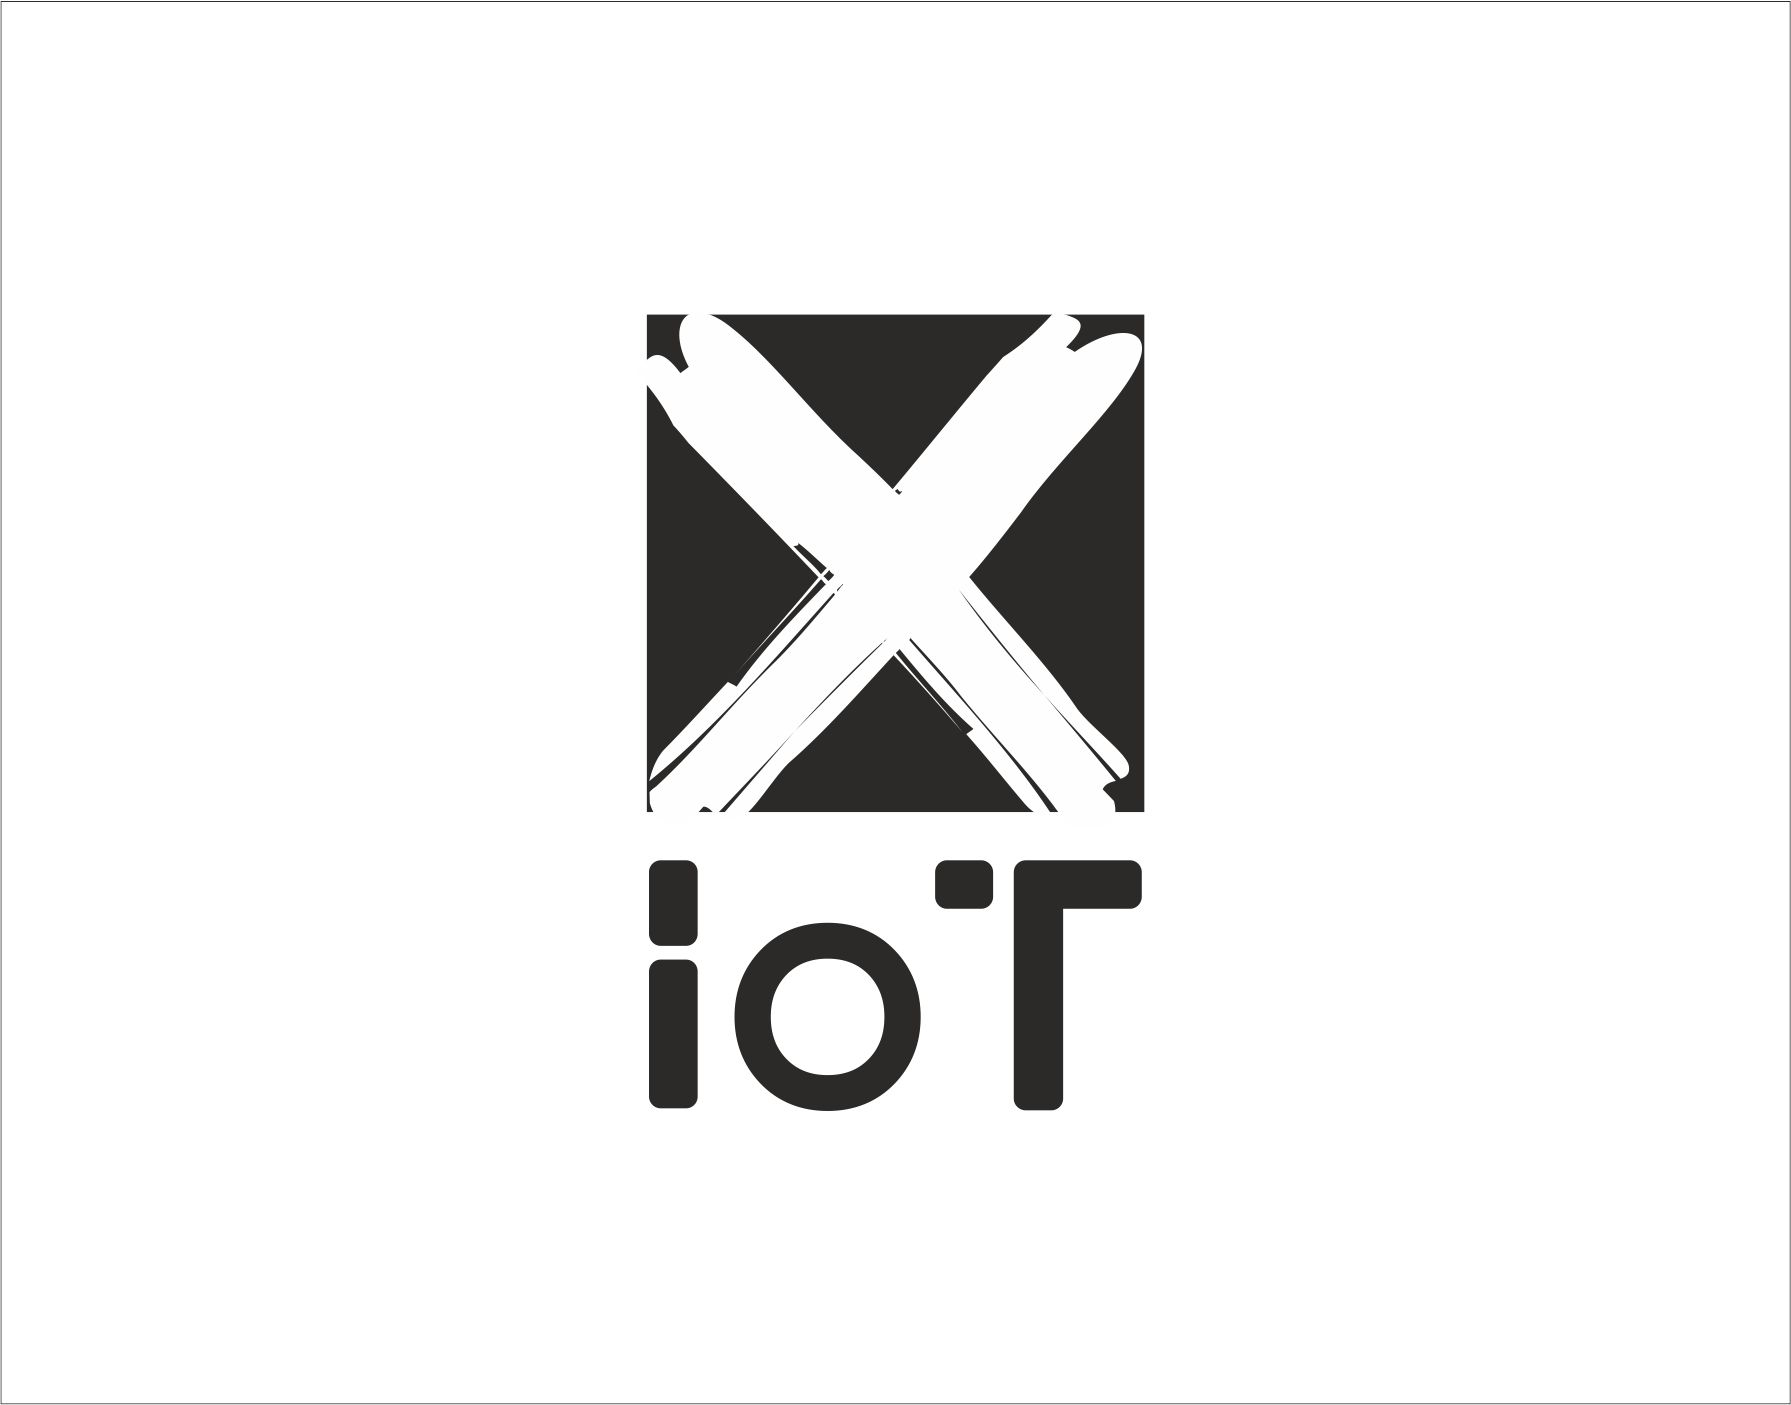 Логотип для X IoT - дизайнер DzeshkevichMary